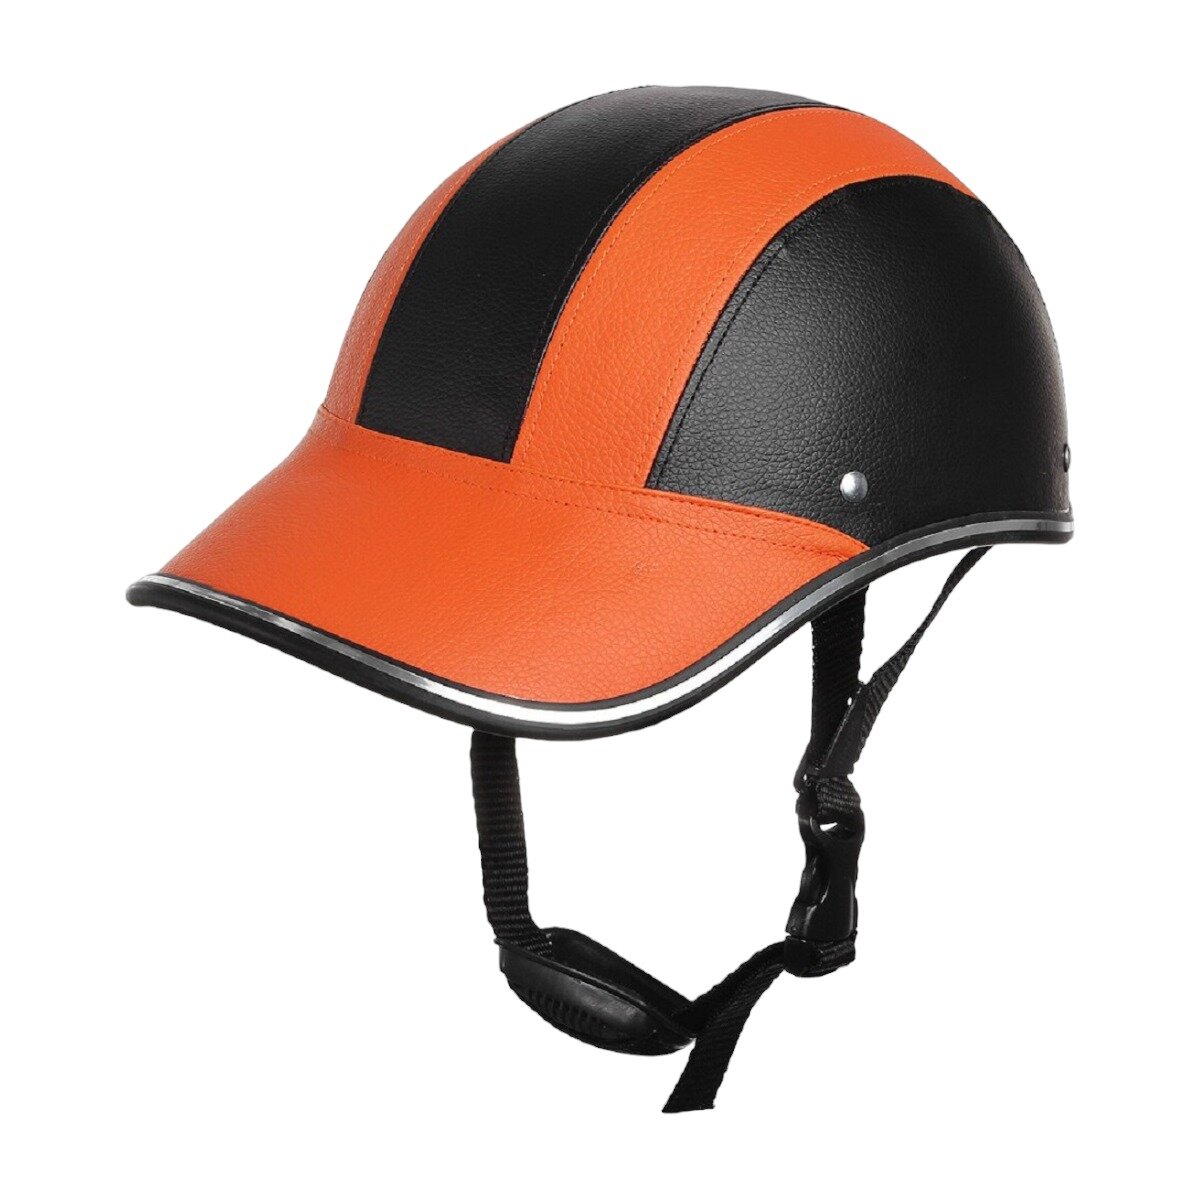 Каска кепка Goldwing открытый шлем под кожу для мотоциклиста на мотоцикл чоппер круизер скутер мопед, оранжево-черная